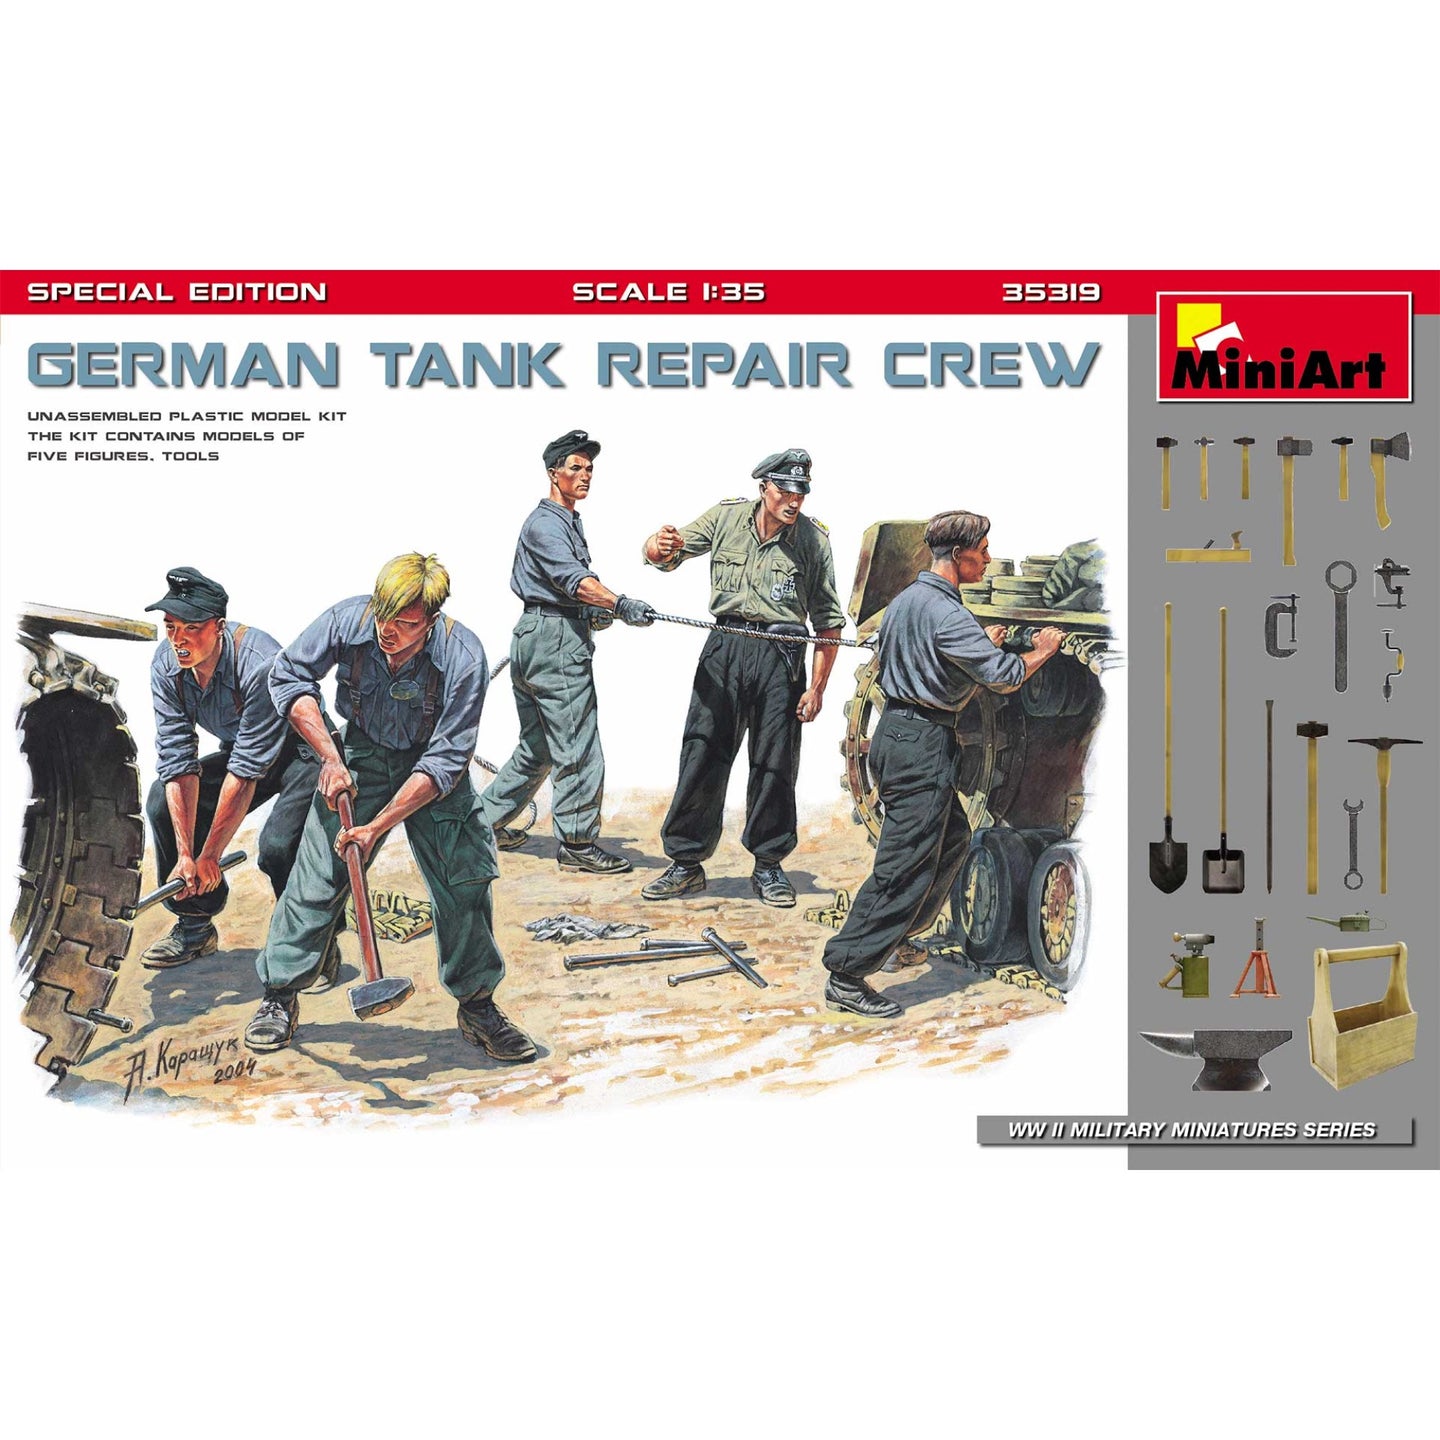 Miniart 1/35 German Tank Repair Crew 35319